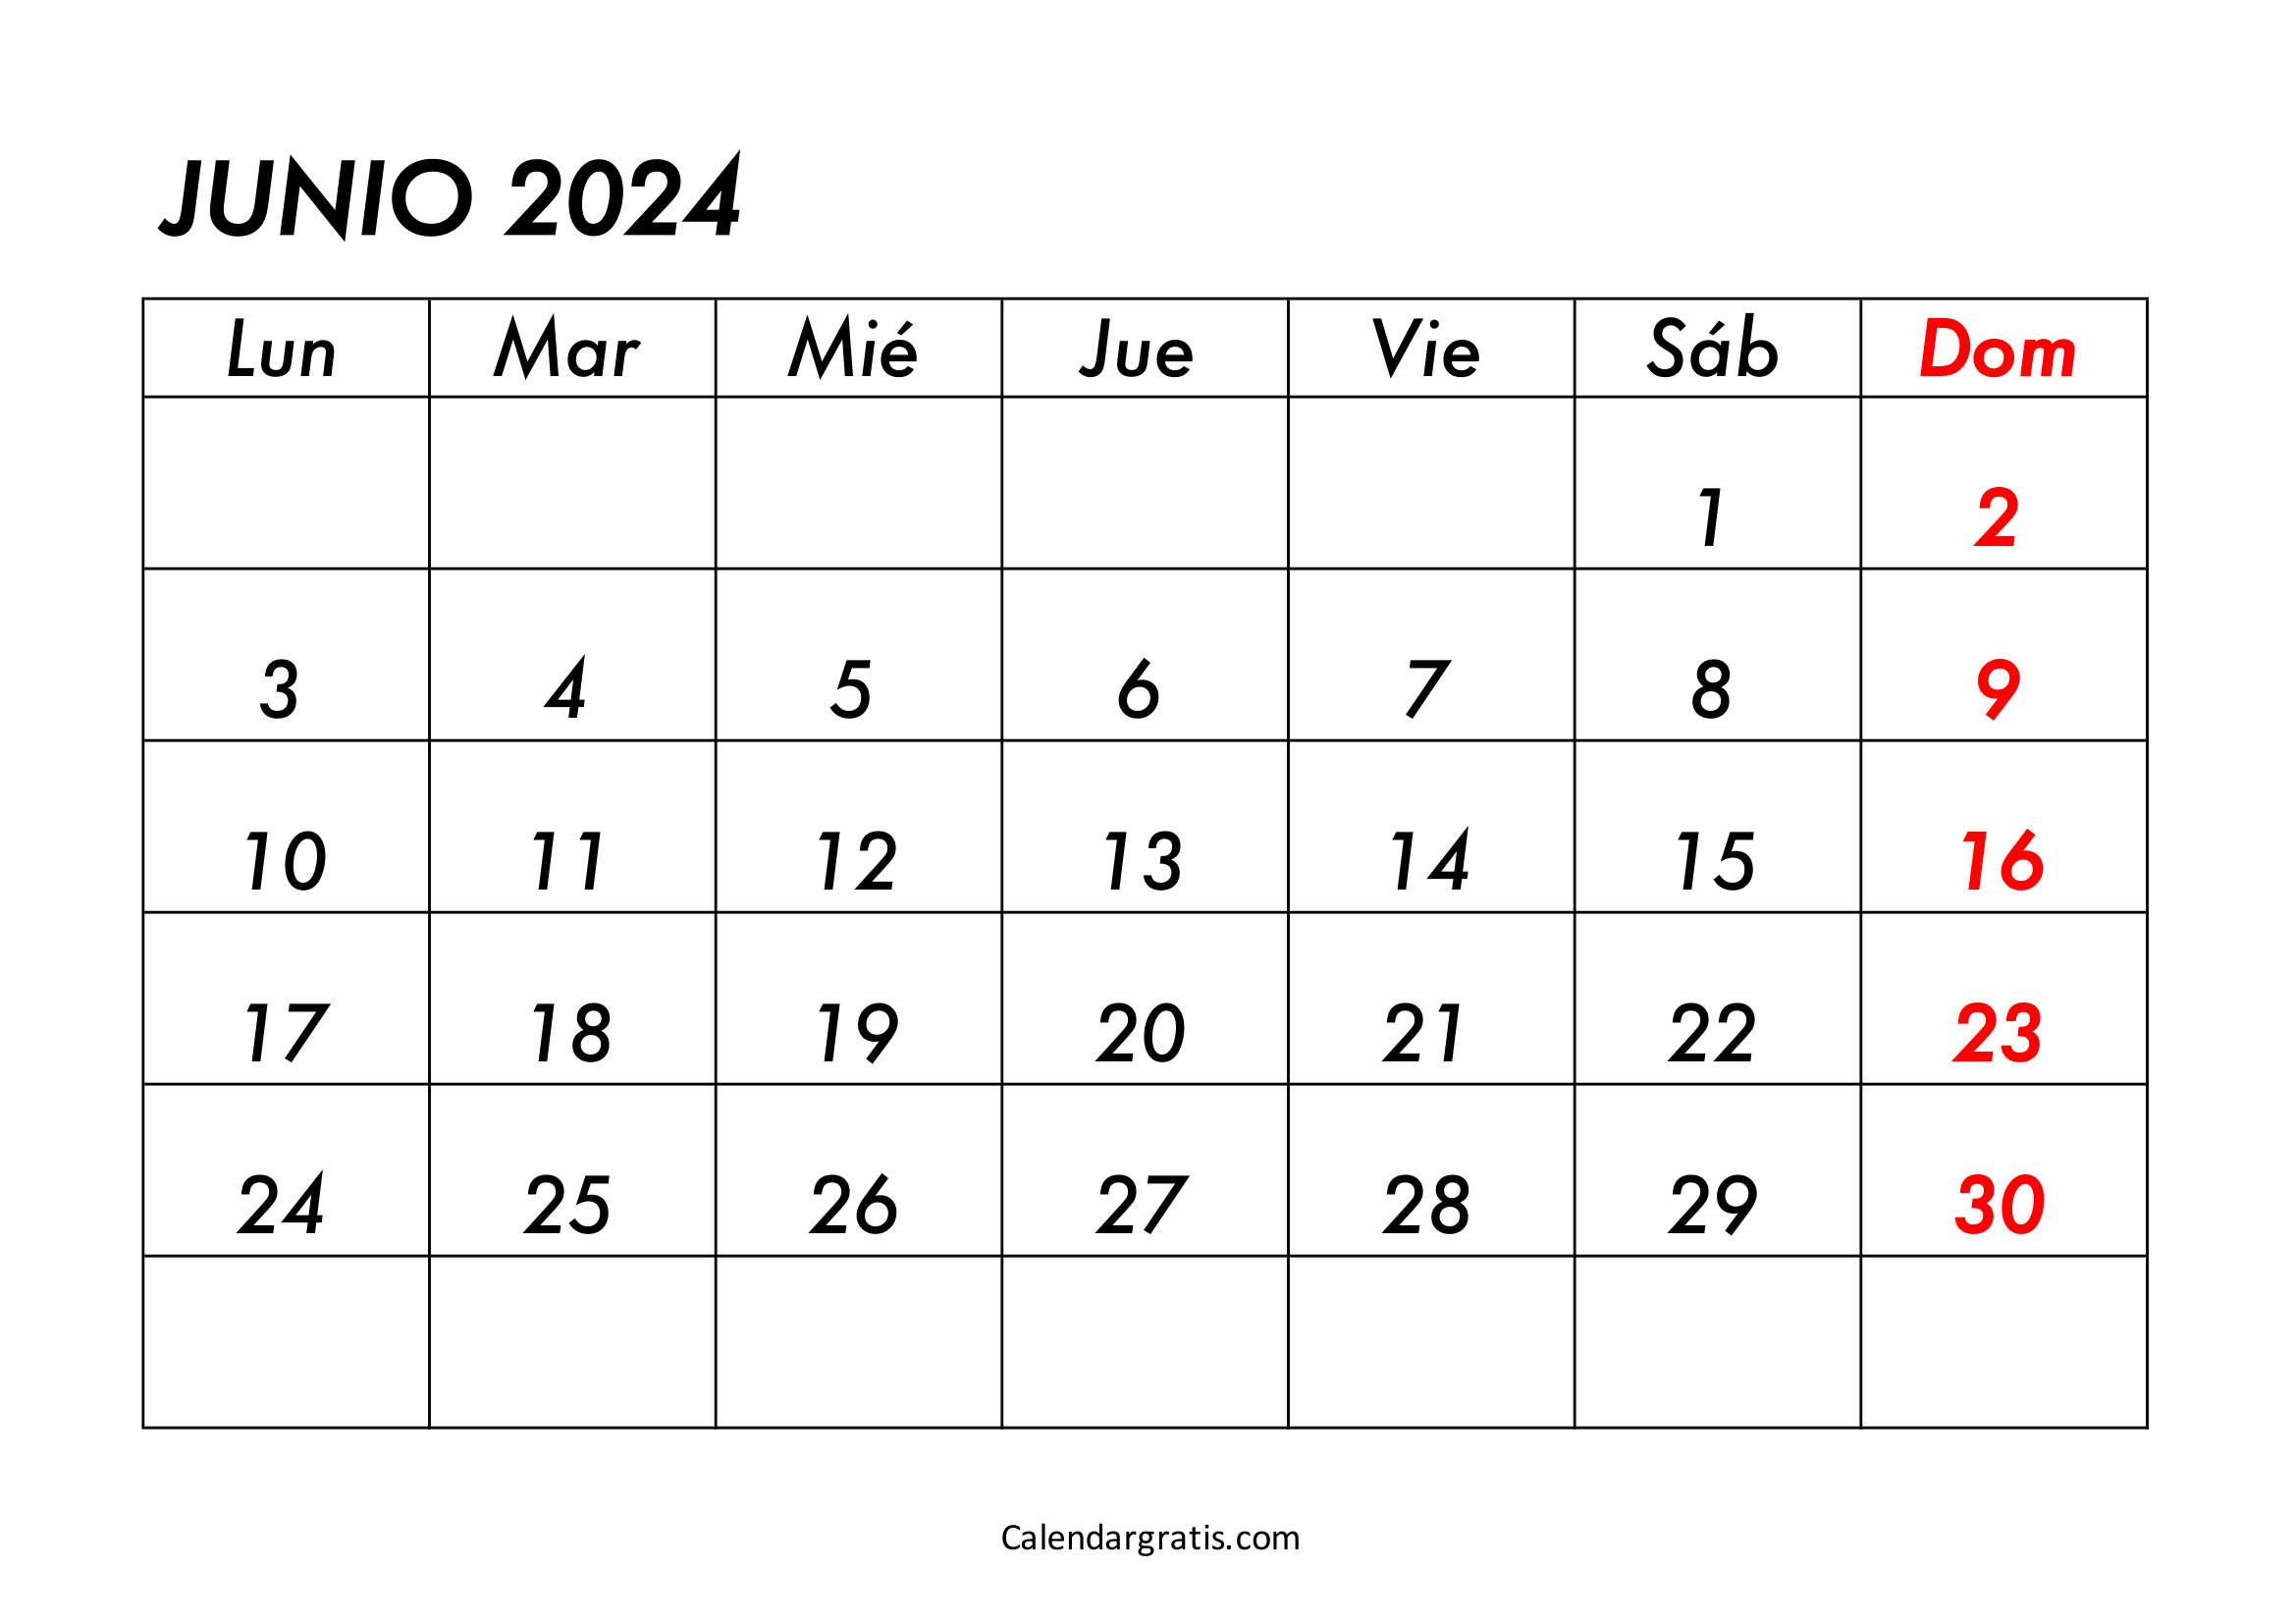 Calendario del mes de junio del 2024